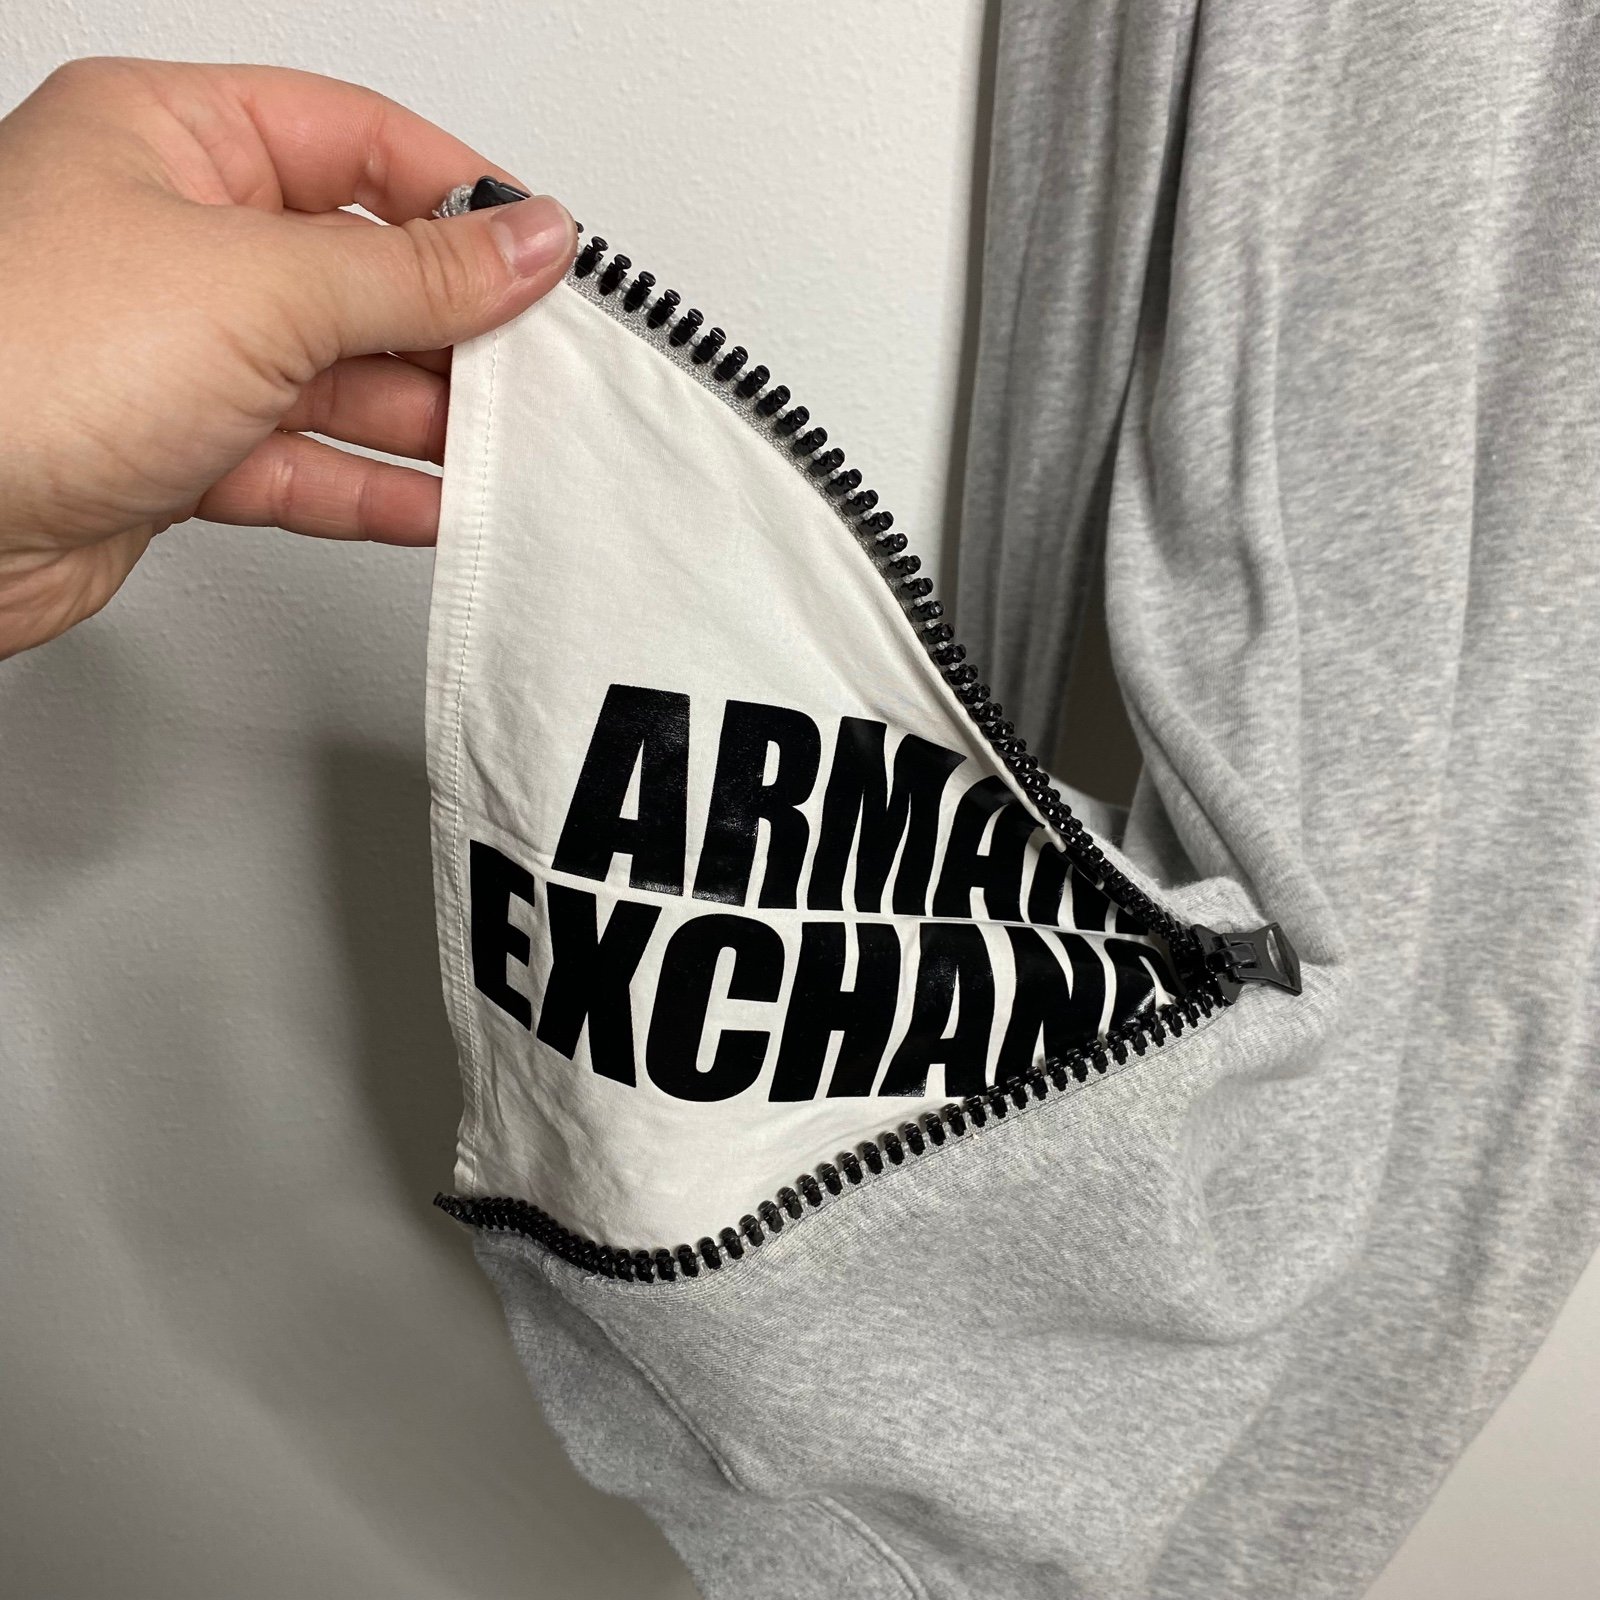 Classic Armani exchange sweater dress neAdvgwYF High Quaity